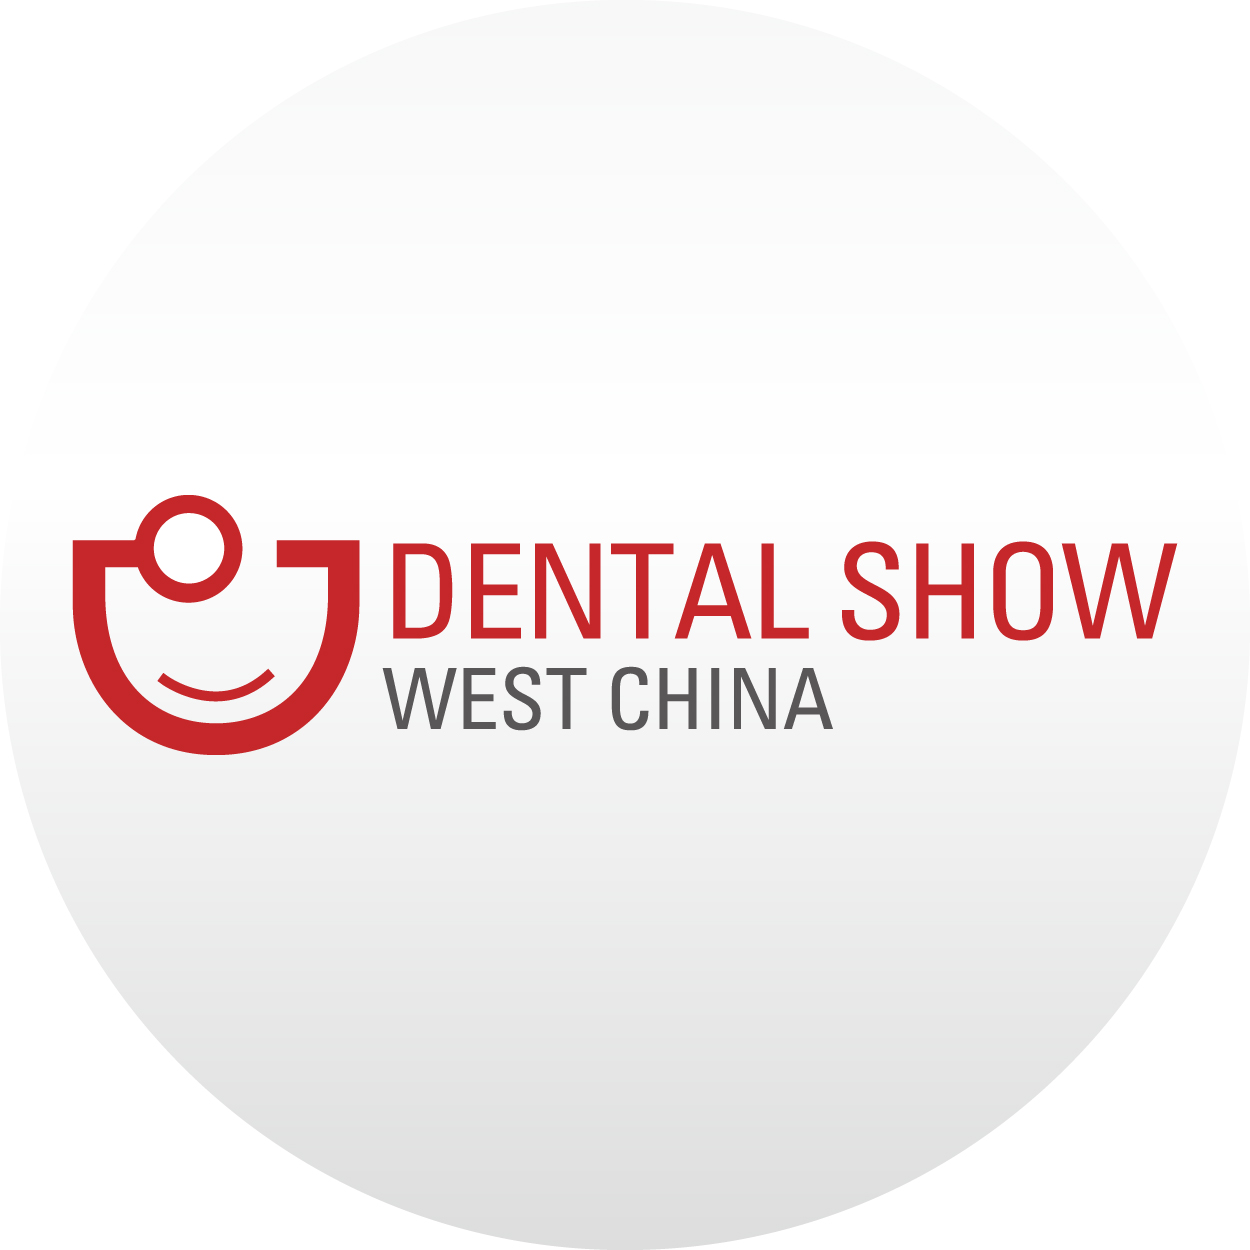 Dental Show West China Chengdu Uluslararası Diş Hekimliği, Diş Teknolojisi Fuarı